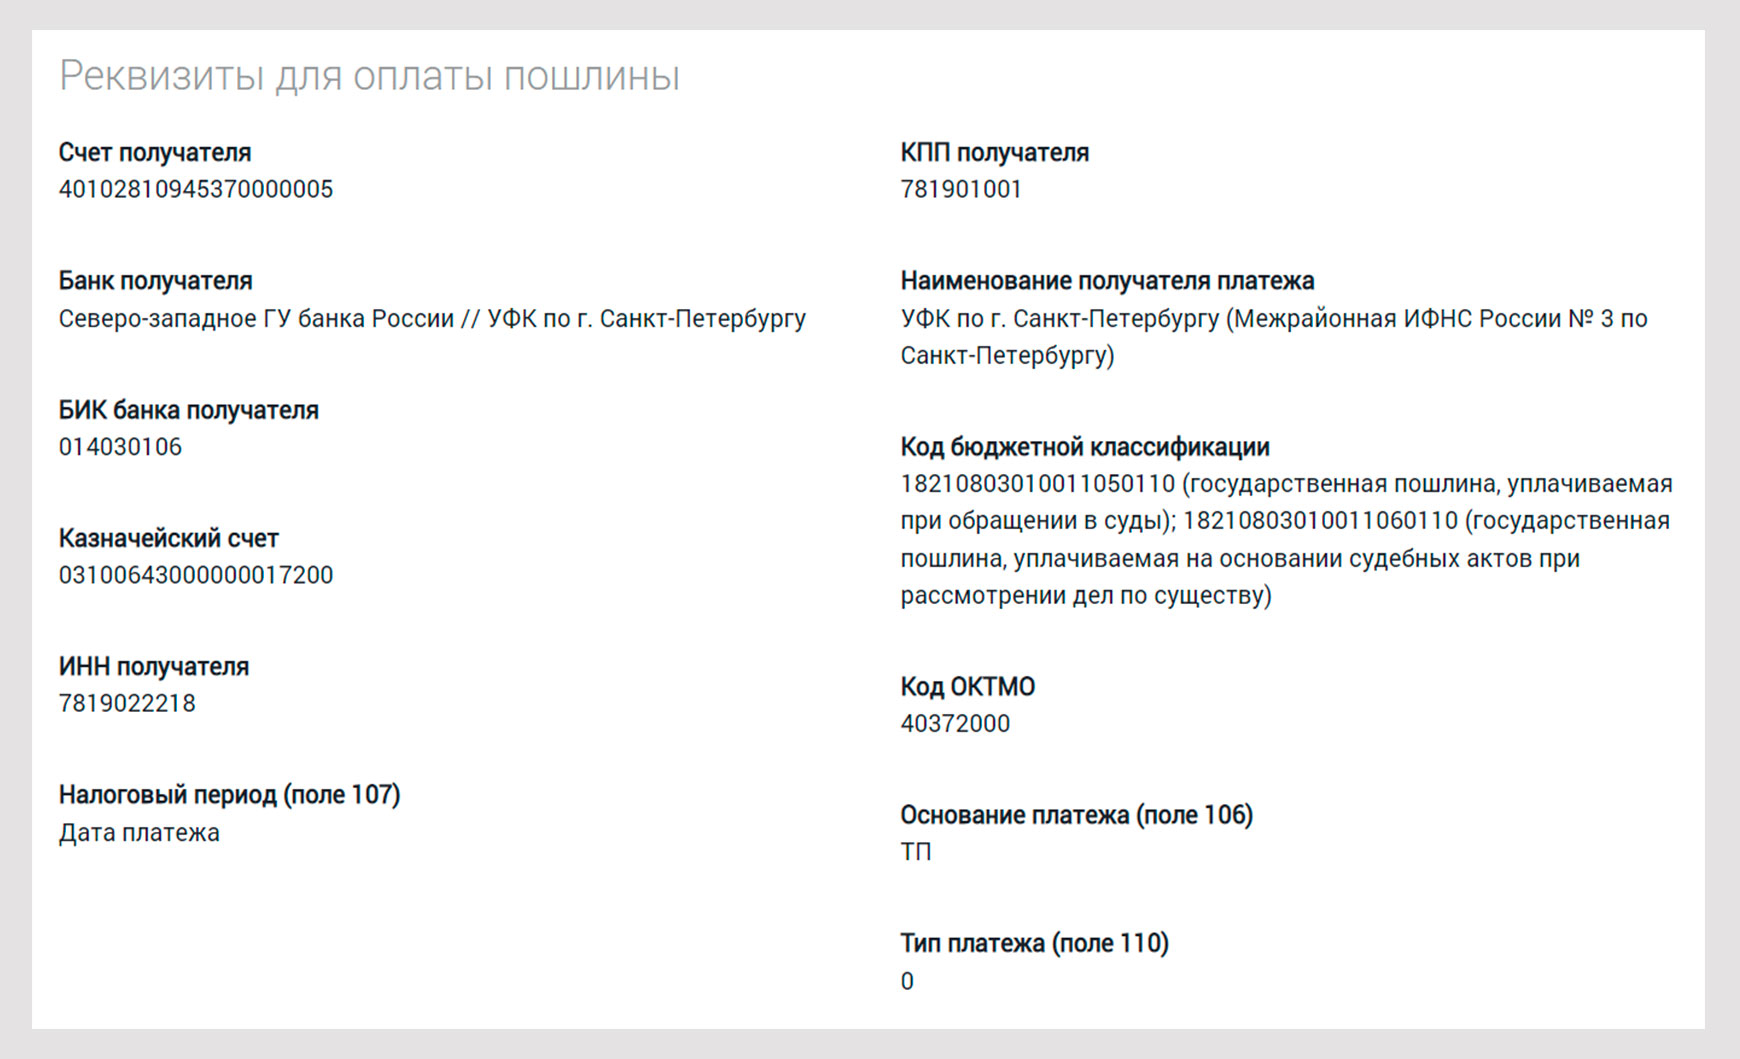 Реквизиты для оплаты пошлины по 115 судебному участку СПб.